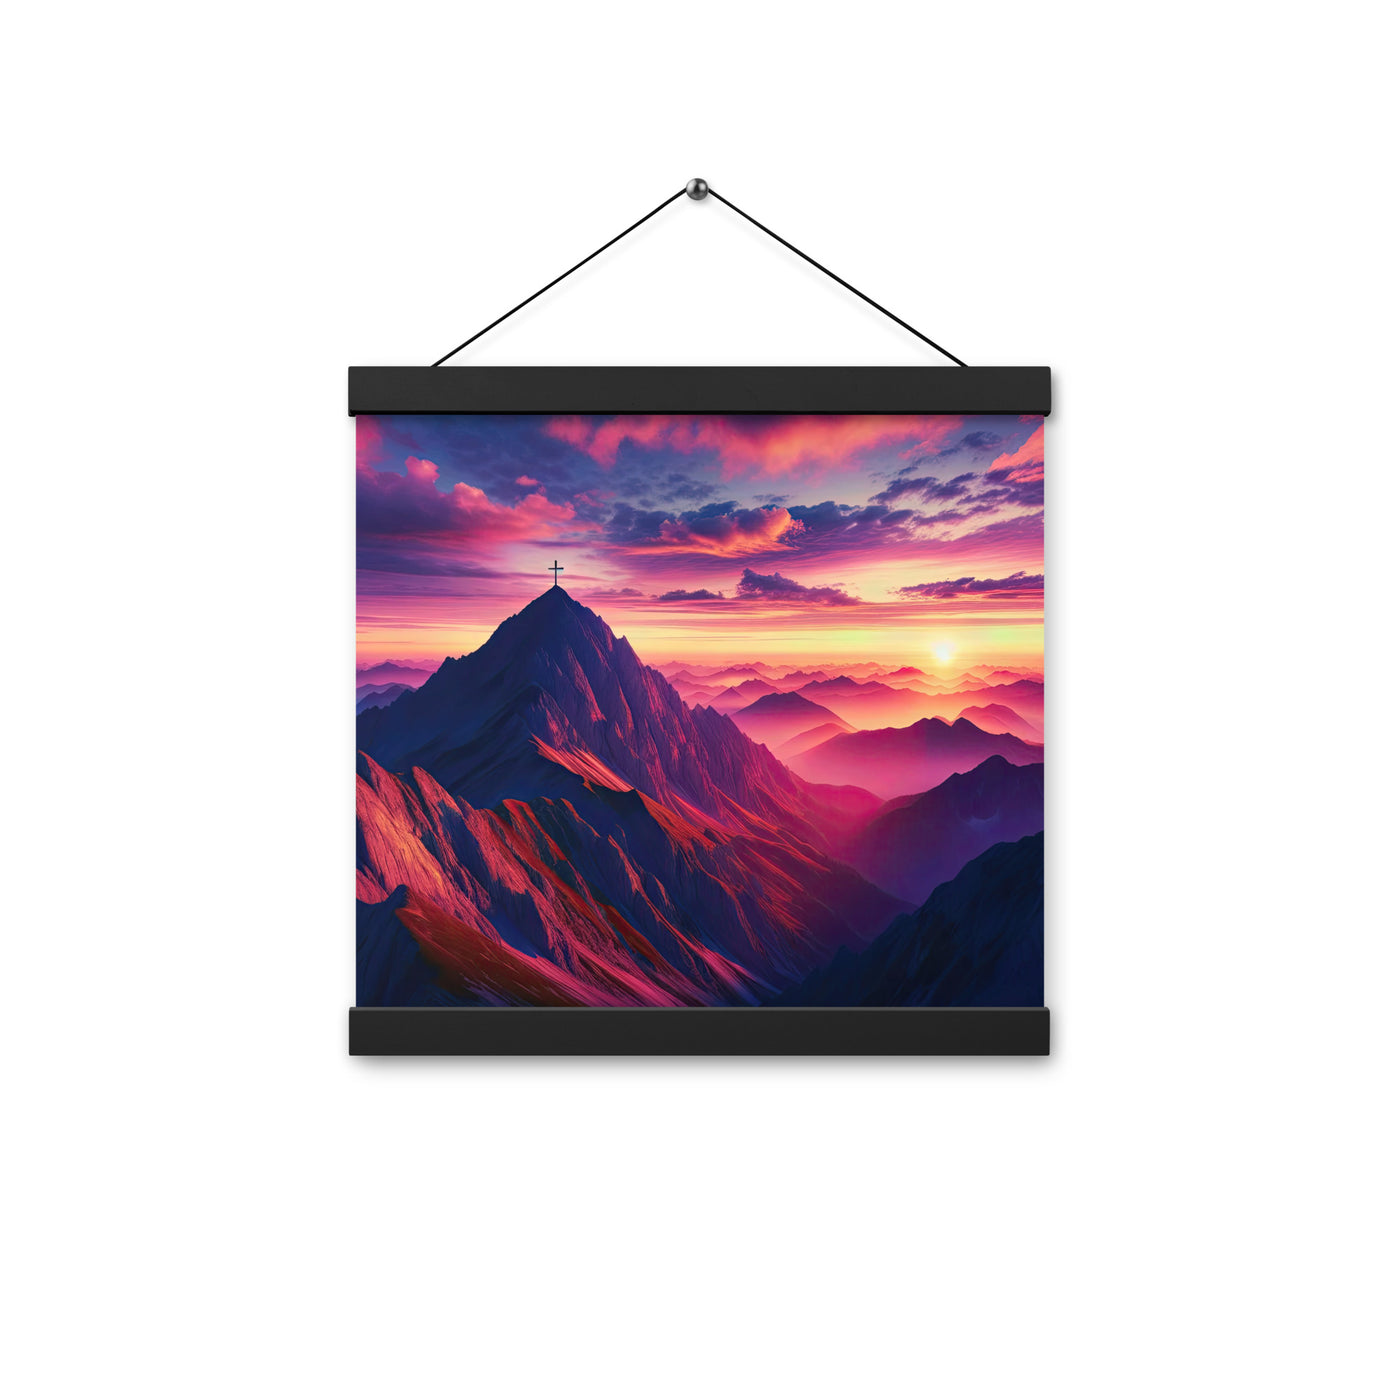 Dramatischer Alpen-Sonnenaufgang, Gipfelkreuz und warme Himmelsfarben - Premium Poster mit Aufhängung berge xxx yyy zzz 30.5 x 30.5 cm